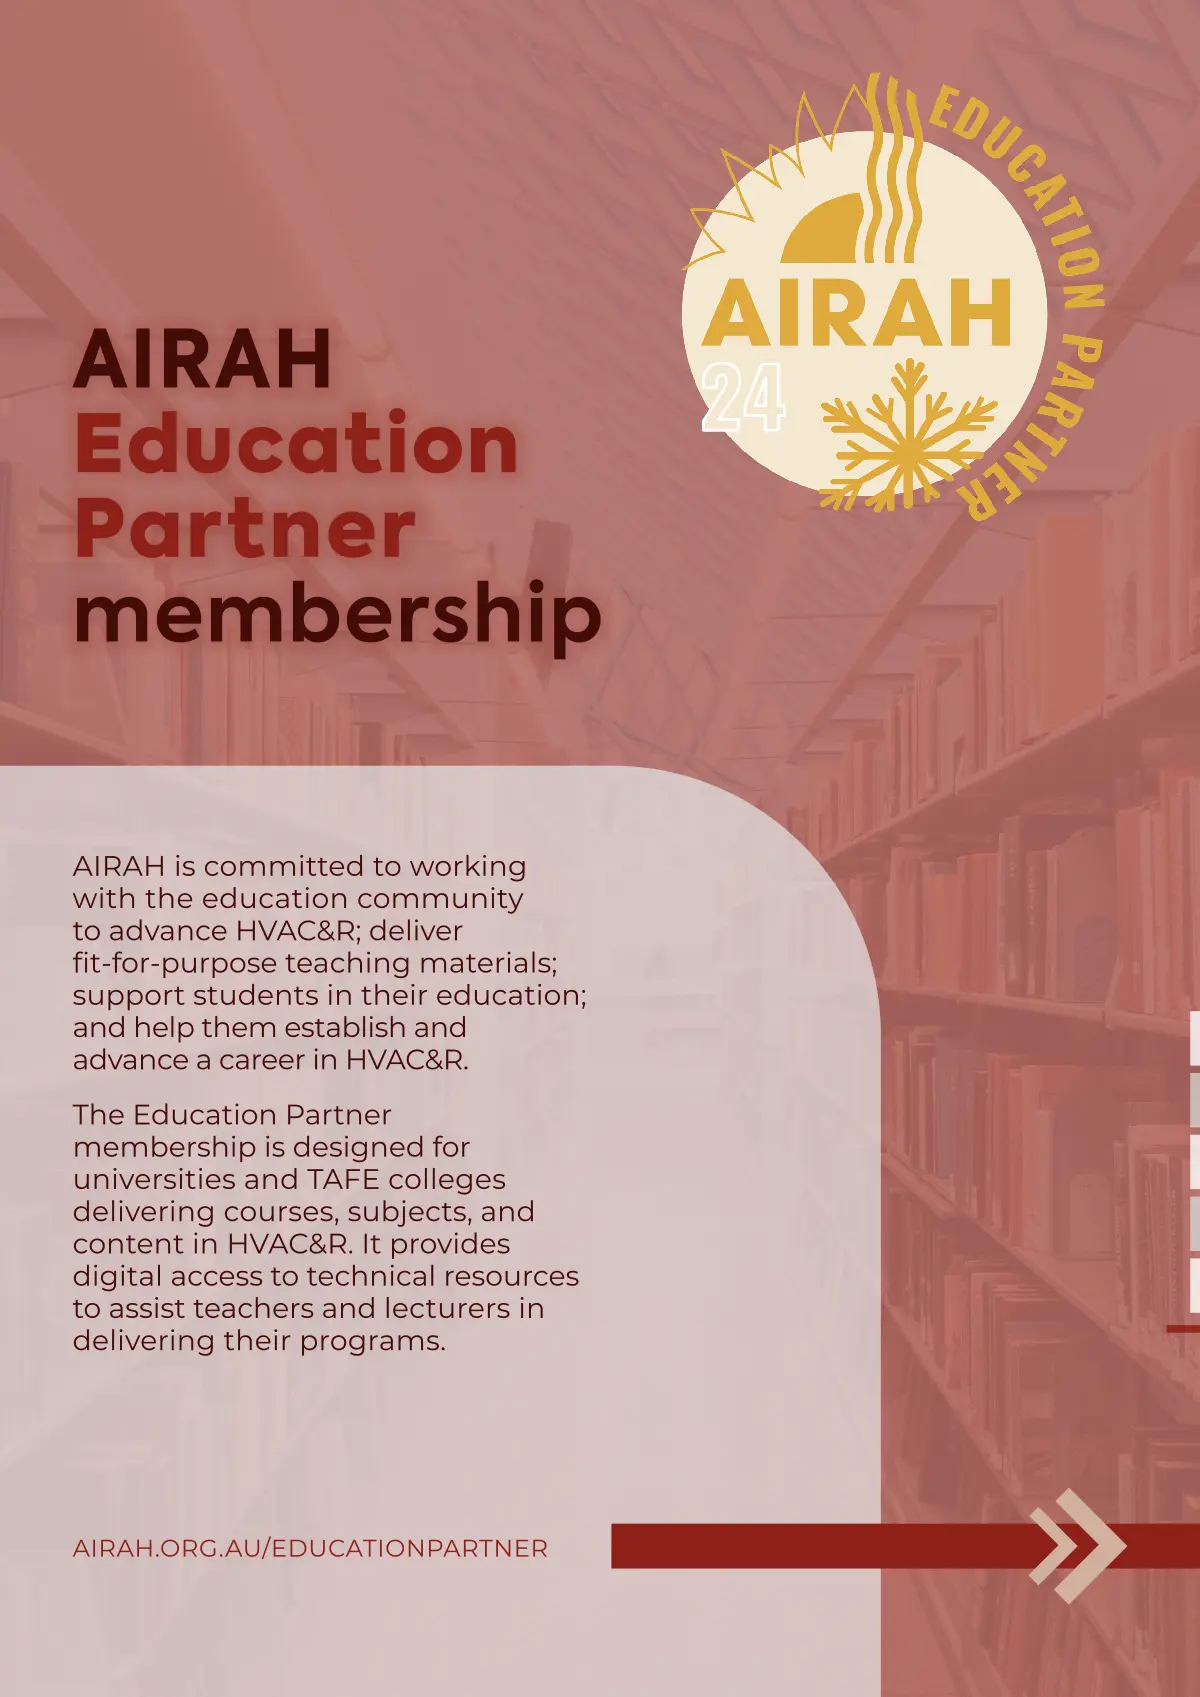 AIRAH Education Partner brochure